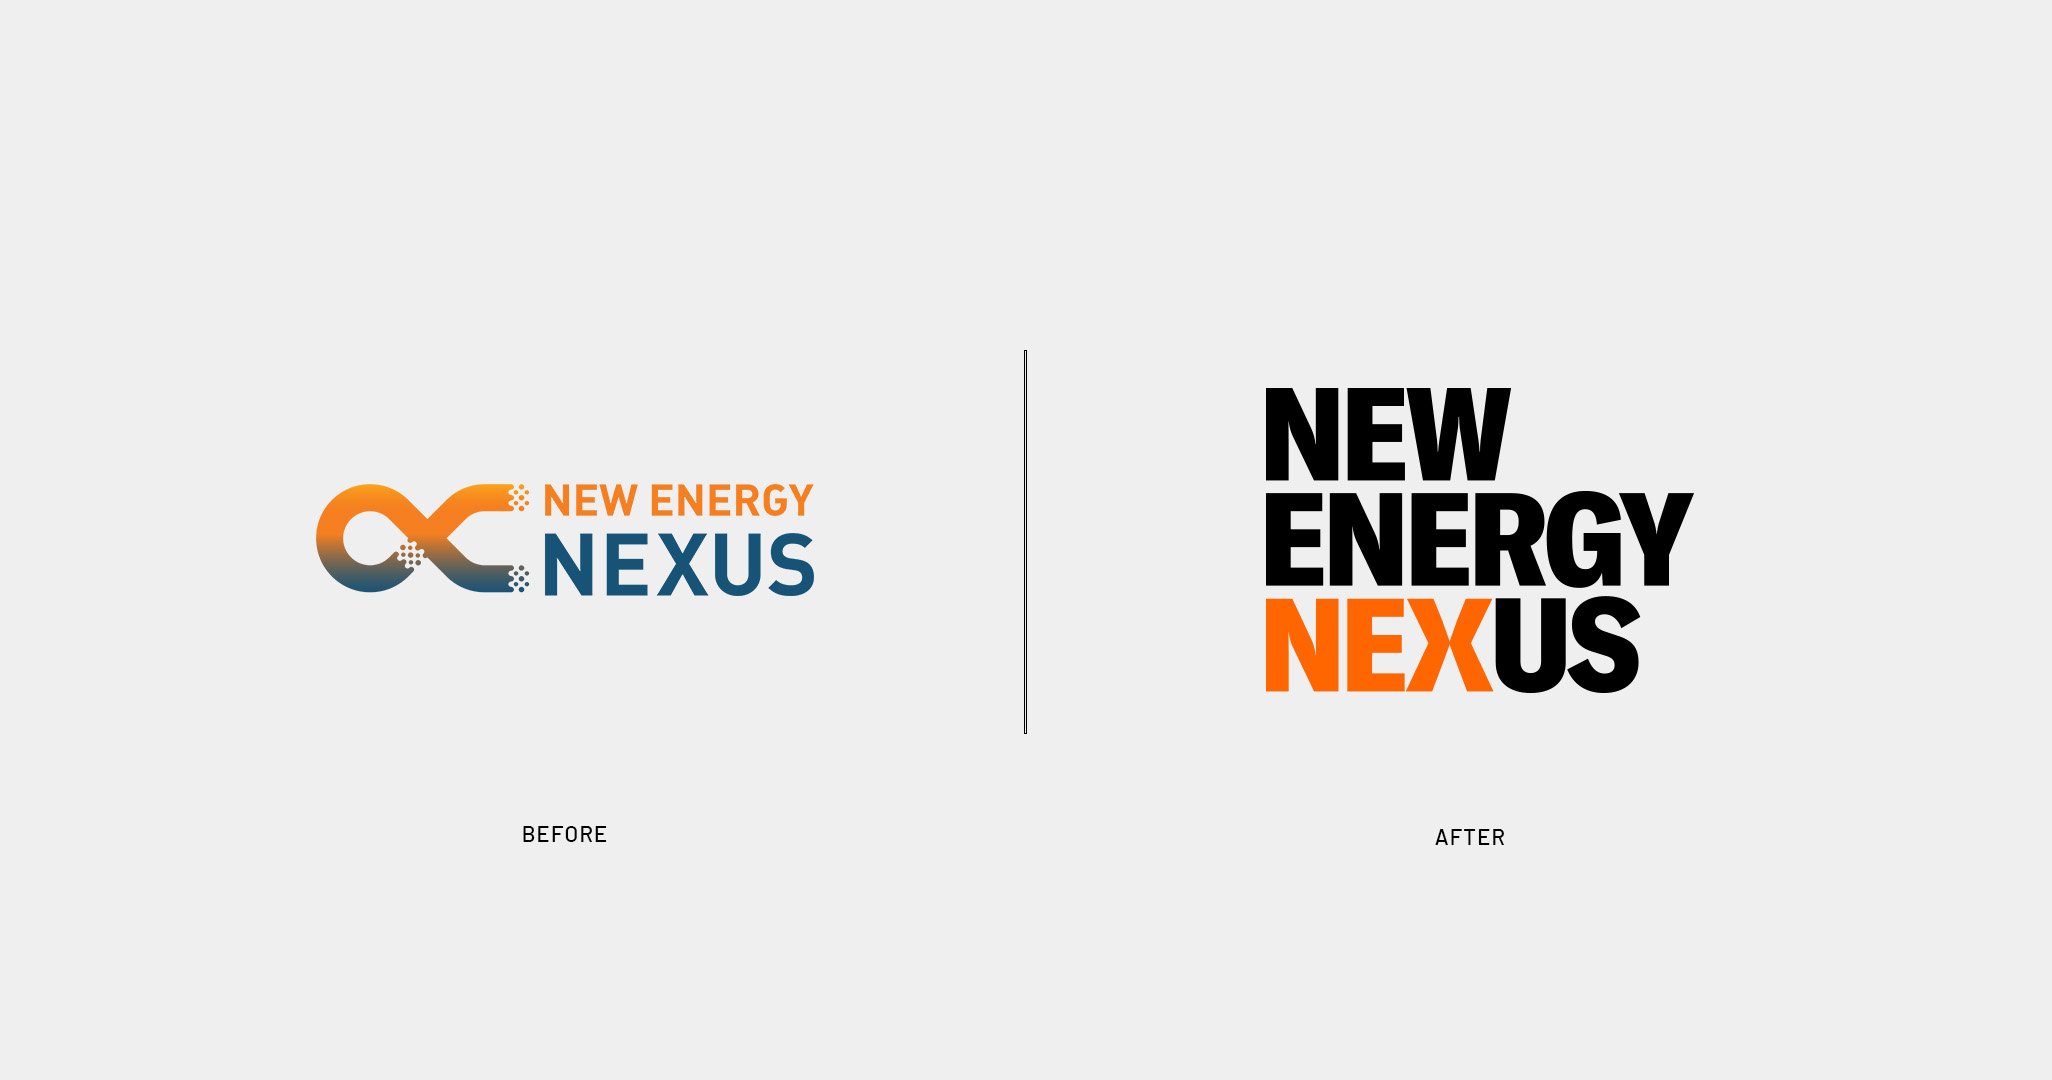 Logo da empresa nexus energy.